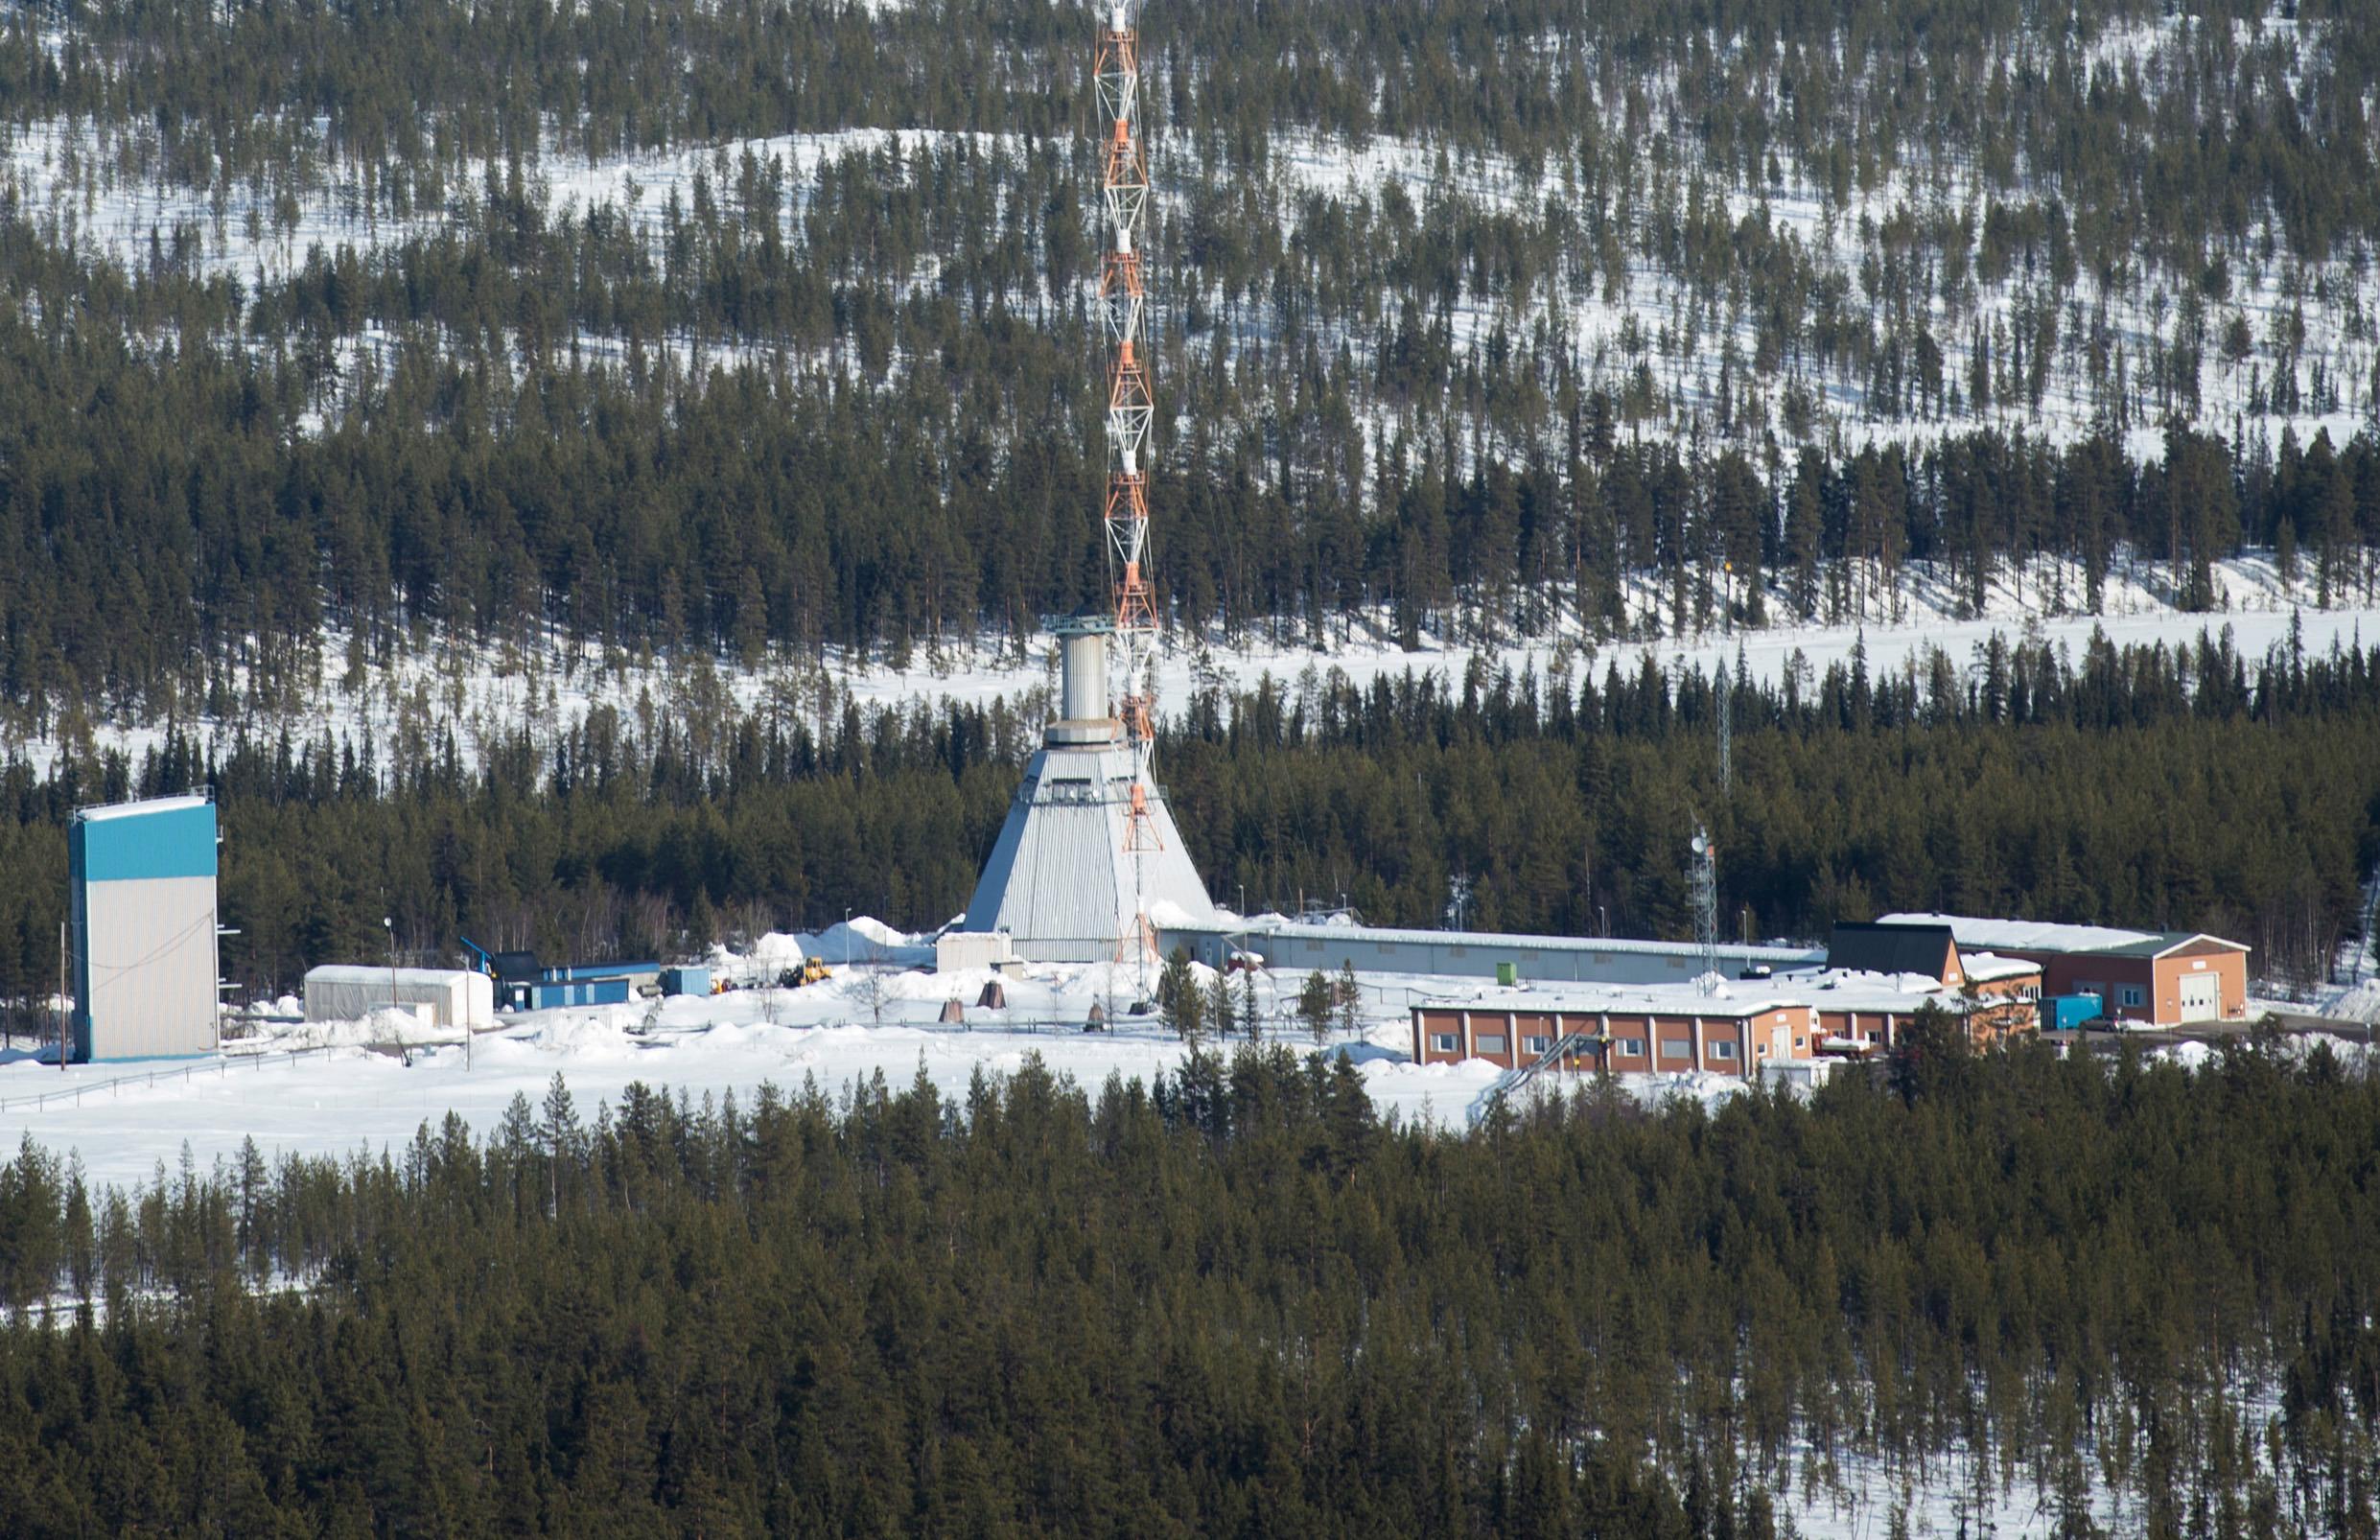 Rymdbolaget SSC har ingått ett nytt avtal med två internationella raketföretag som ska möjliggöra satellituppskjutningar från rymdbasen Esrange i Kiruna. Arkivbild. Foto: Fredrik Sandberg/TT